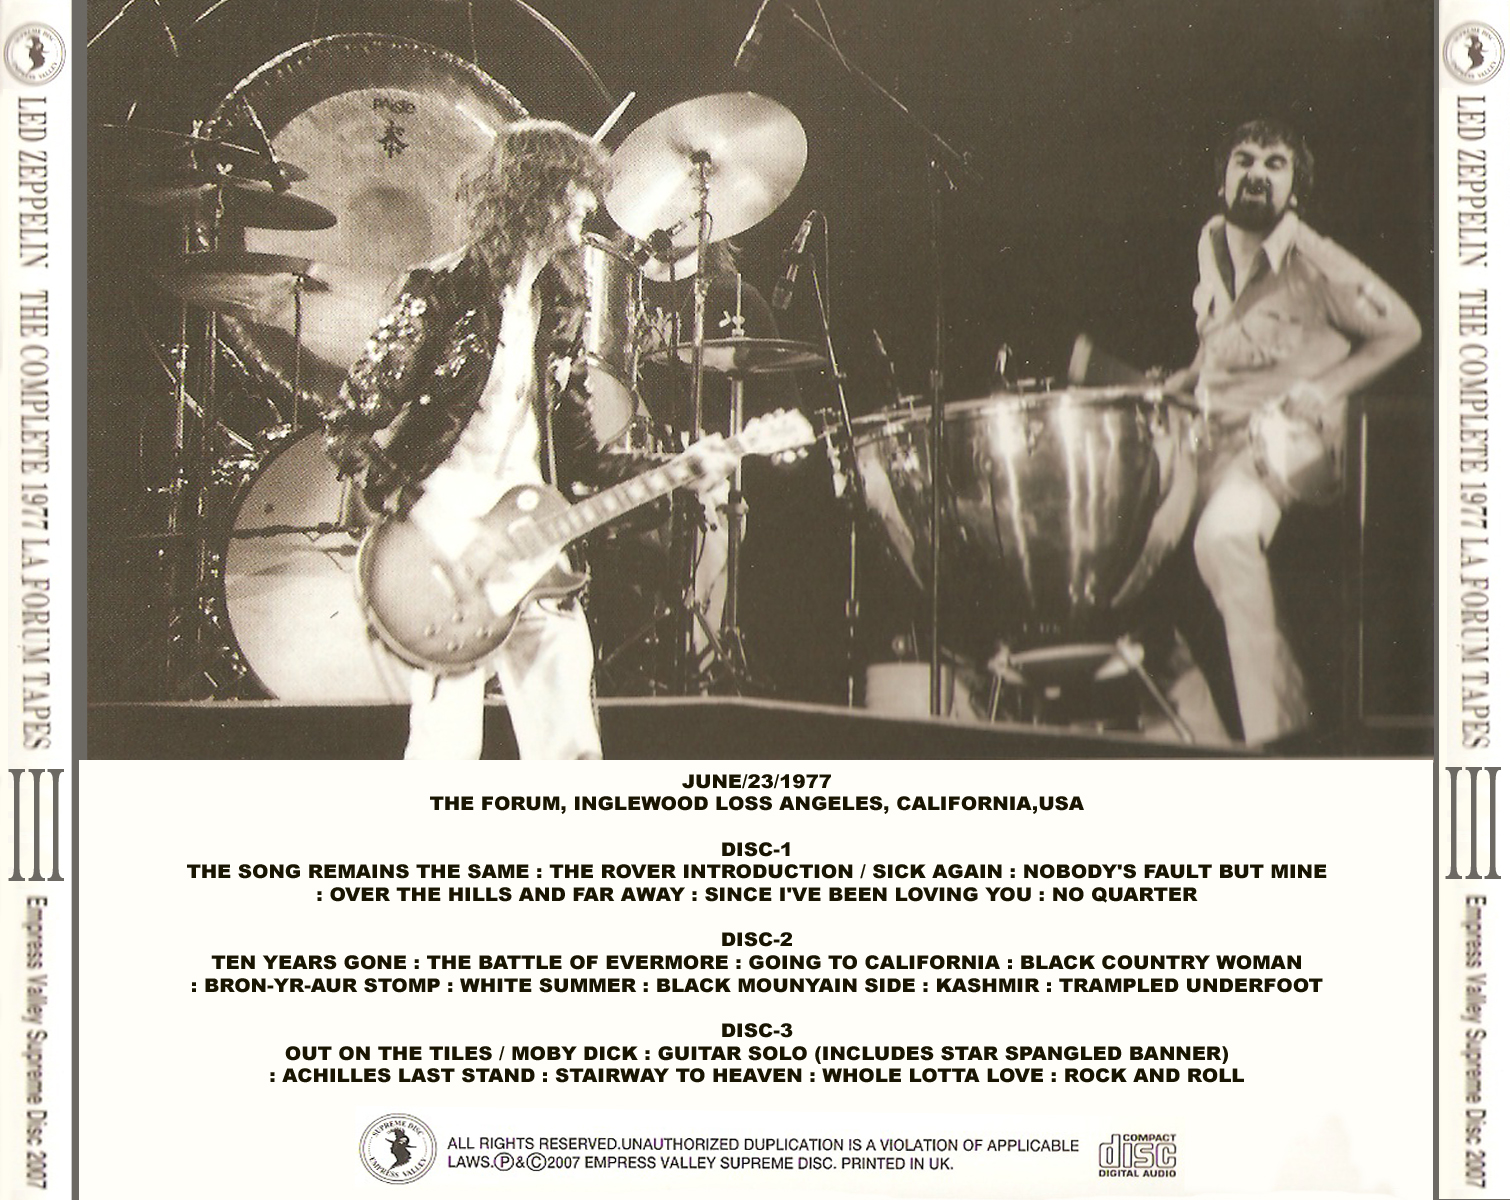 米2discs LP Led Zeppelin For Badge Holders Only Part 2 LZ7 DRAGONFLY /00500  : 2117938 : Record city - 通販 - Yahoo!ショッピング